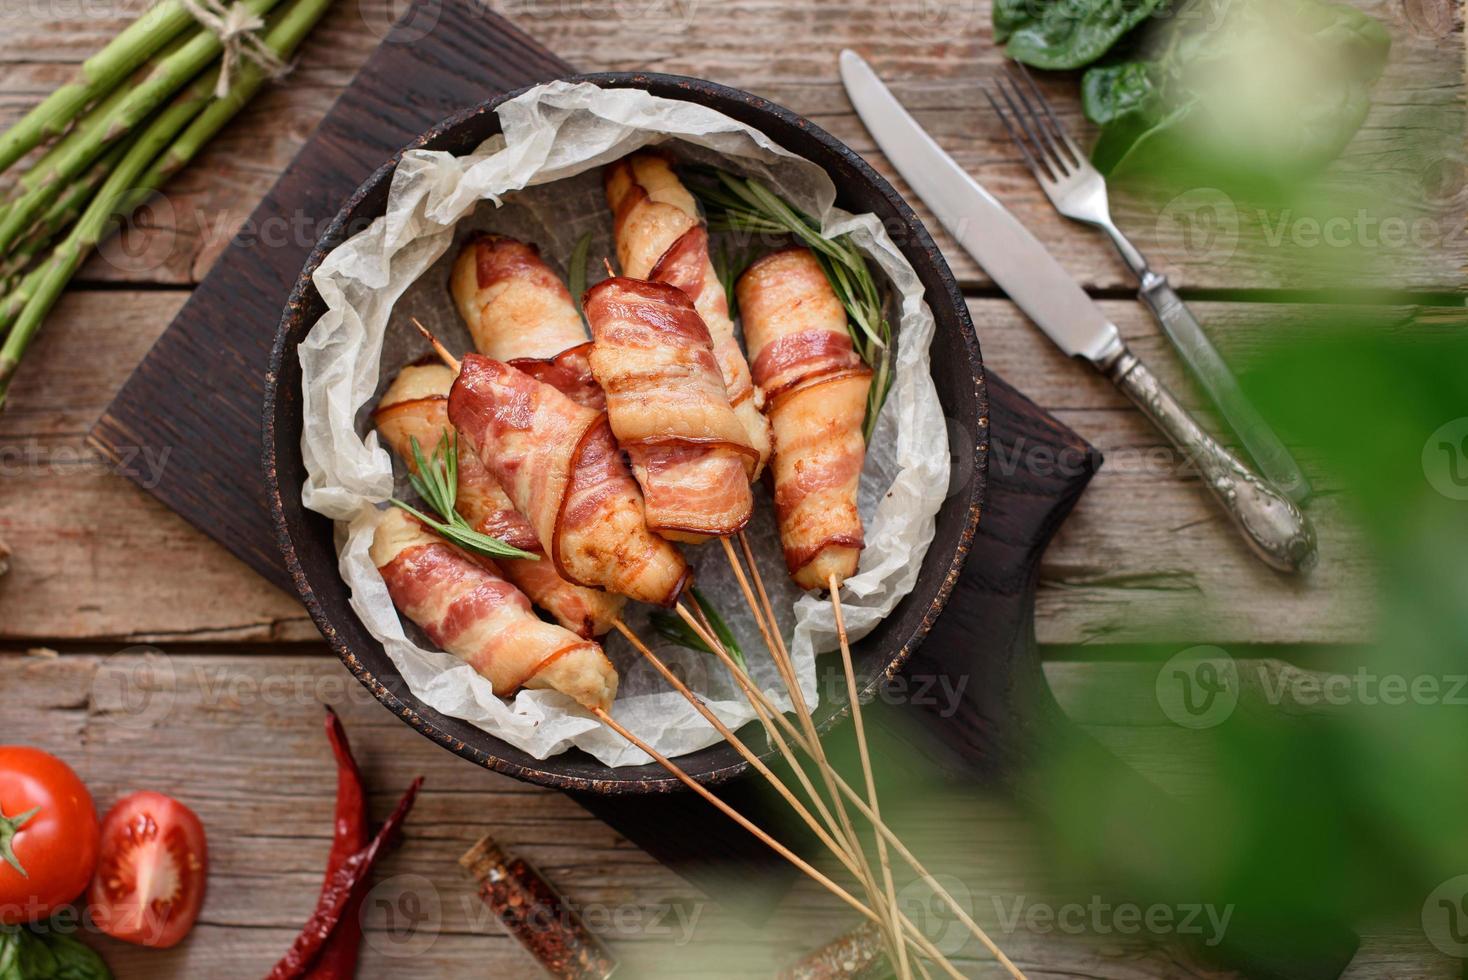 rolo com bacon e frango picado em um guisado com aspargos frescos foto